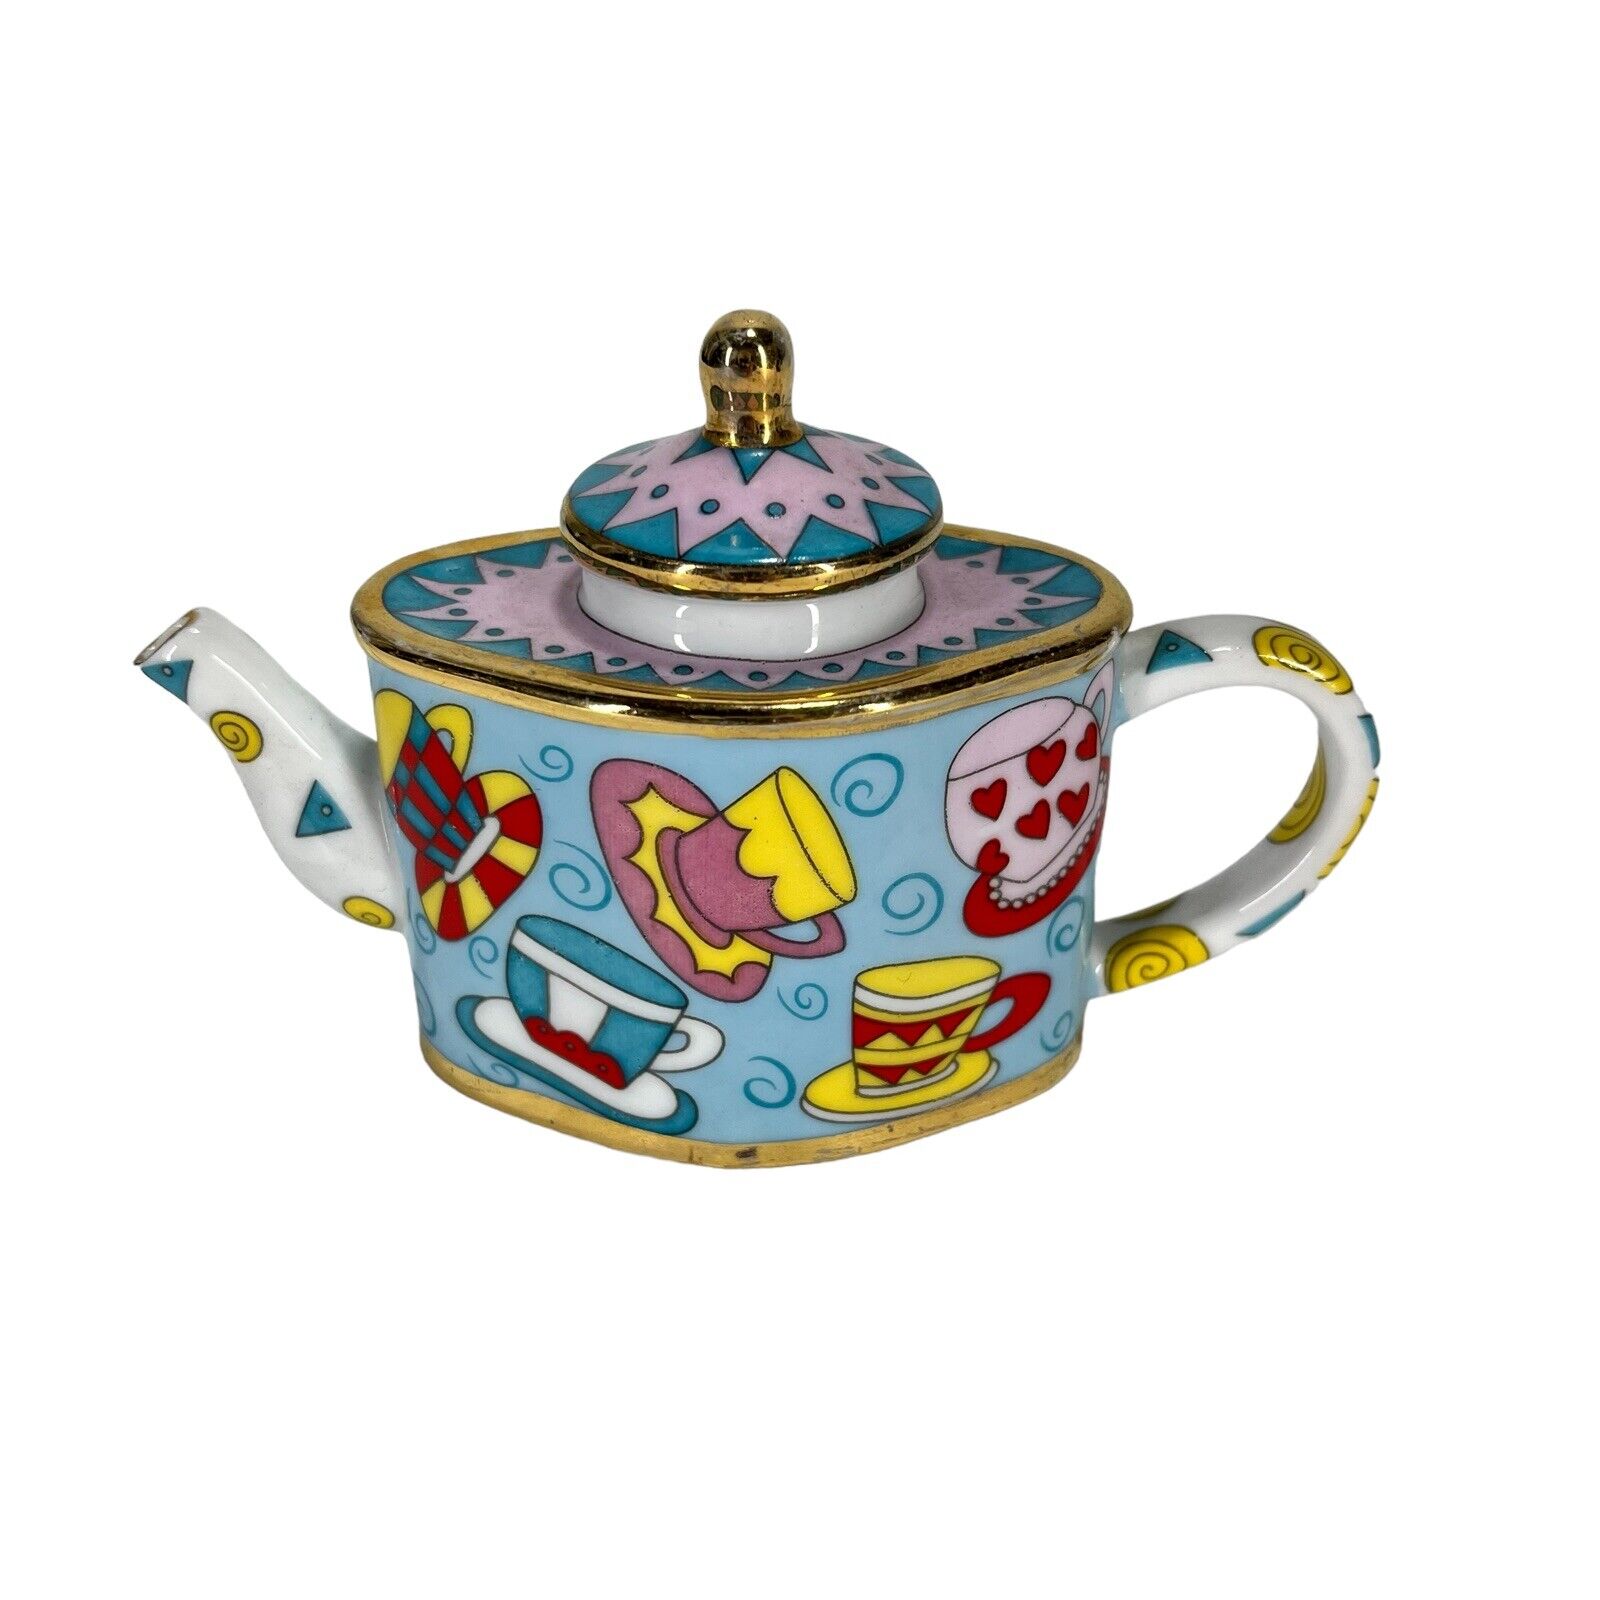 Vivian Chan Vintage 2001 Miniature Porcelain Teapot Teacups & Saucers Design